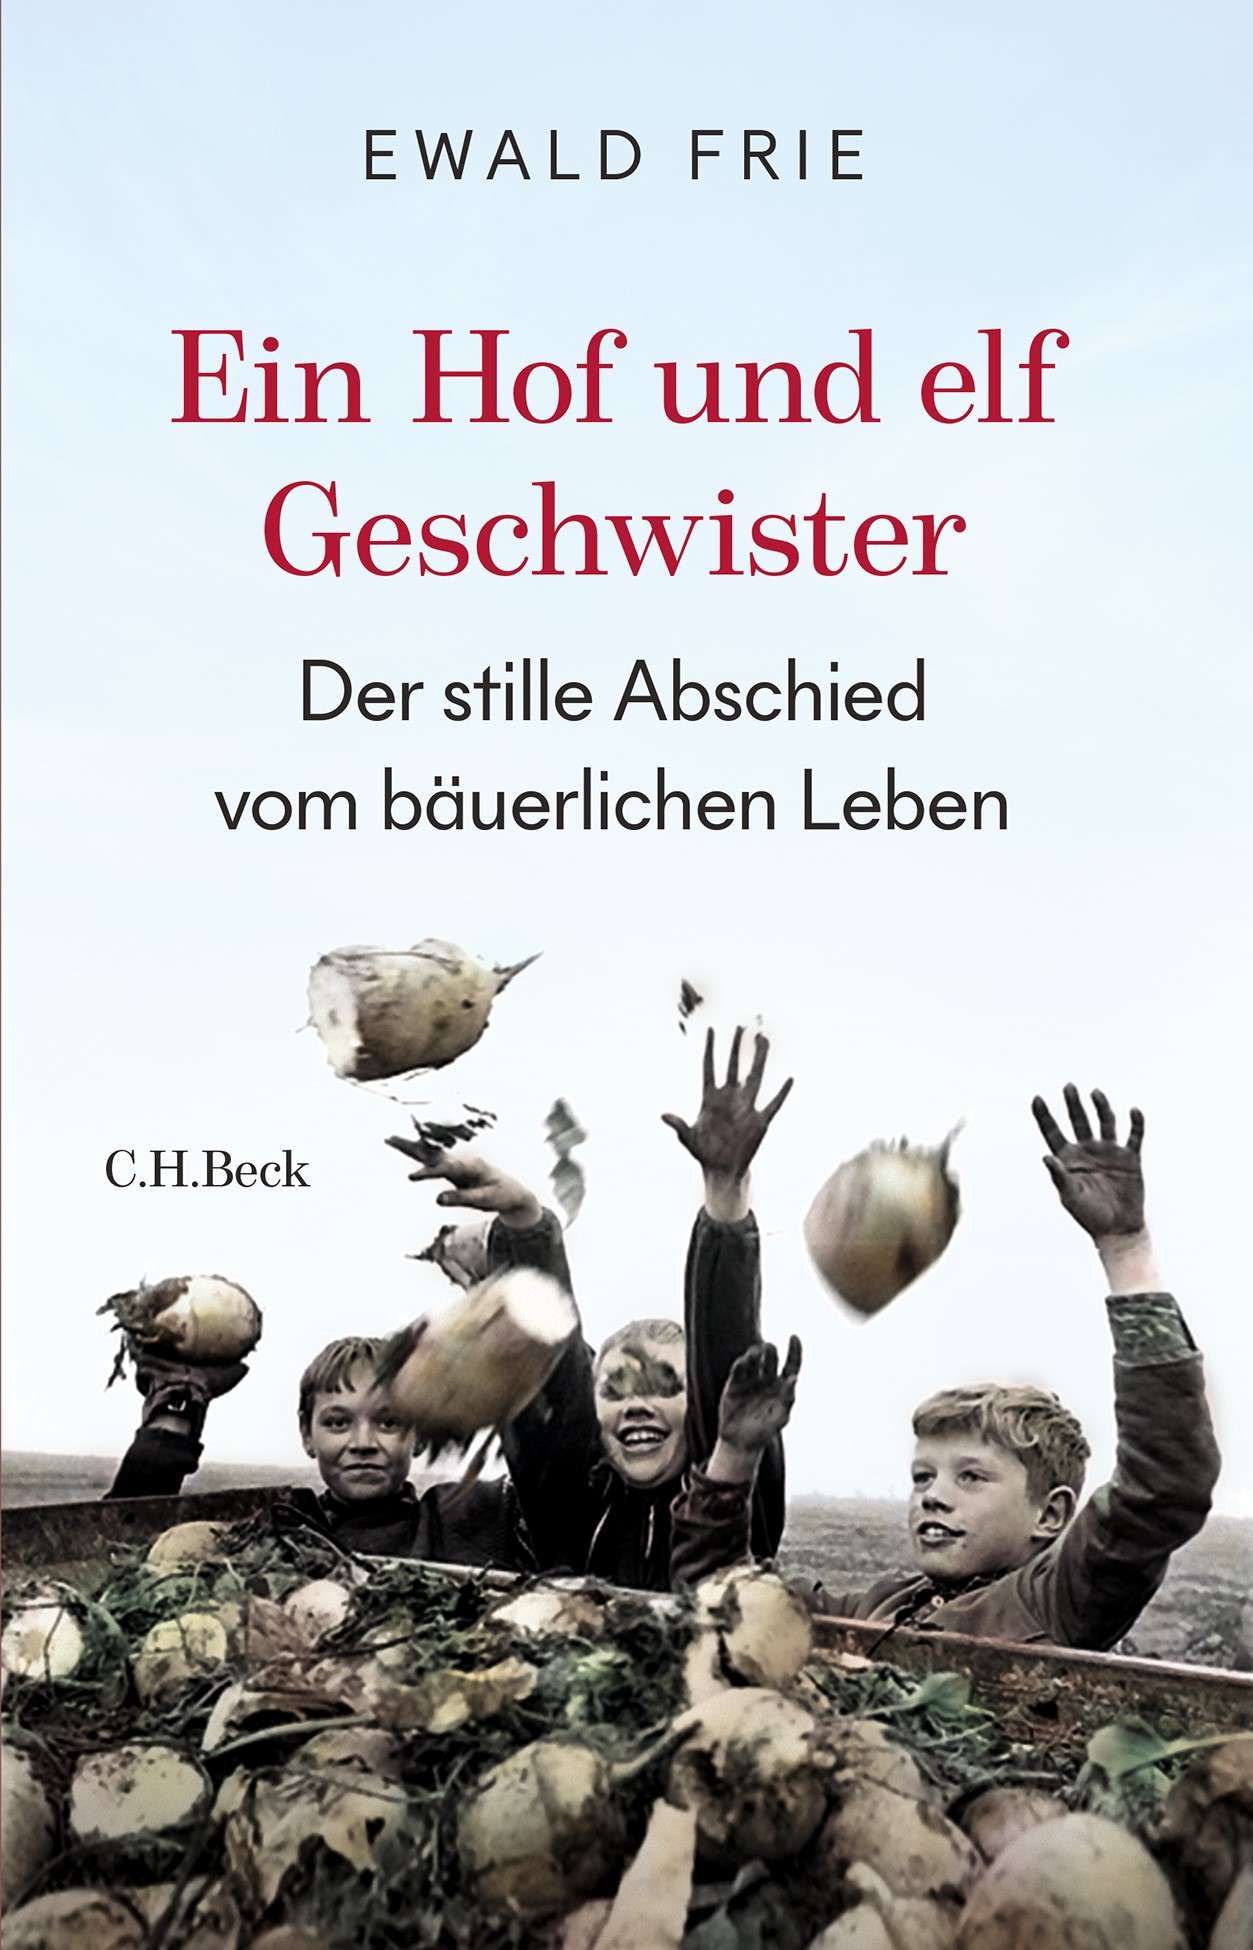 Cover: Frie, Ewald, Ein Hof und elf Geschwister